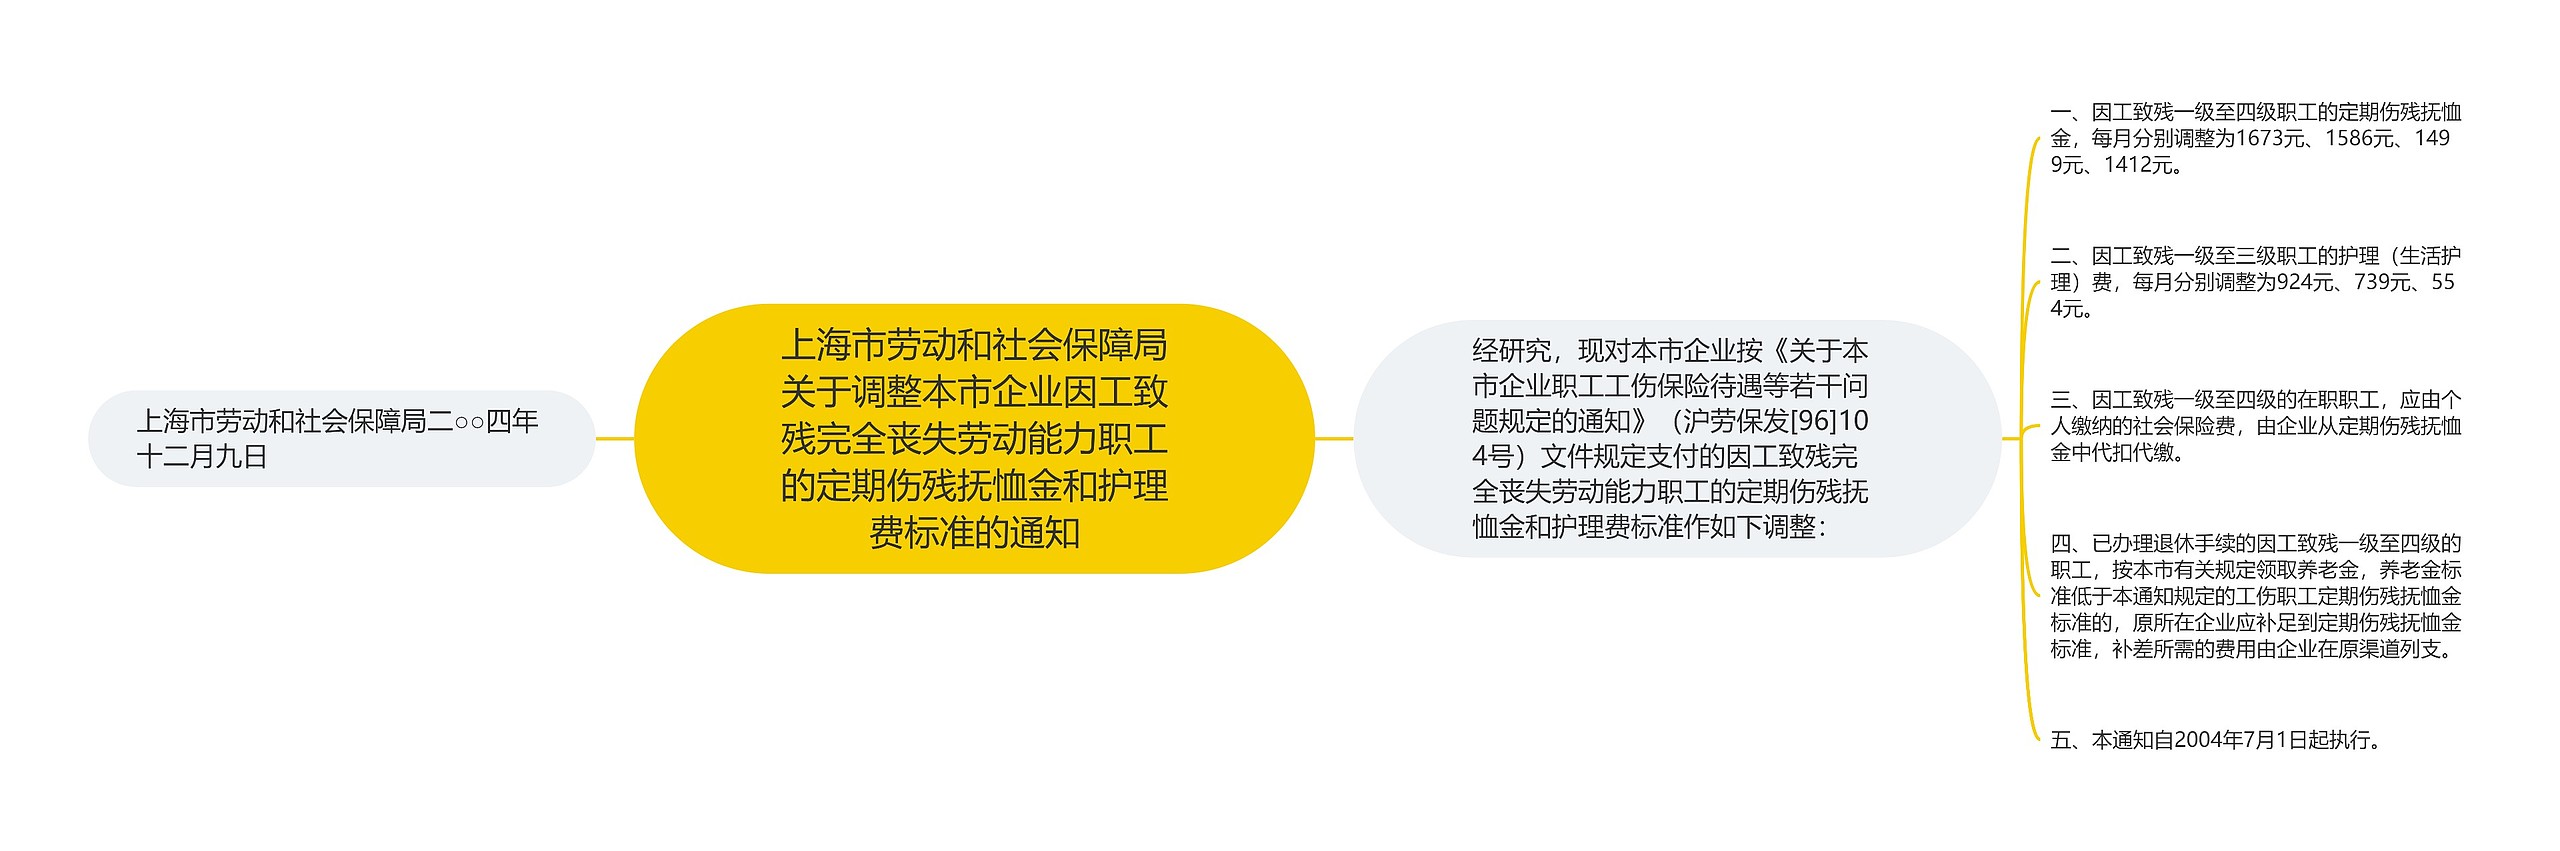 上海市劳动和社会保障局关于调整本市企业因工致残完全丧失劳动能力职工的定期伤残抚恤金和护理费标准的通知